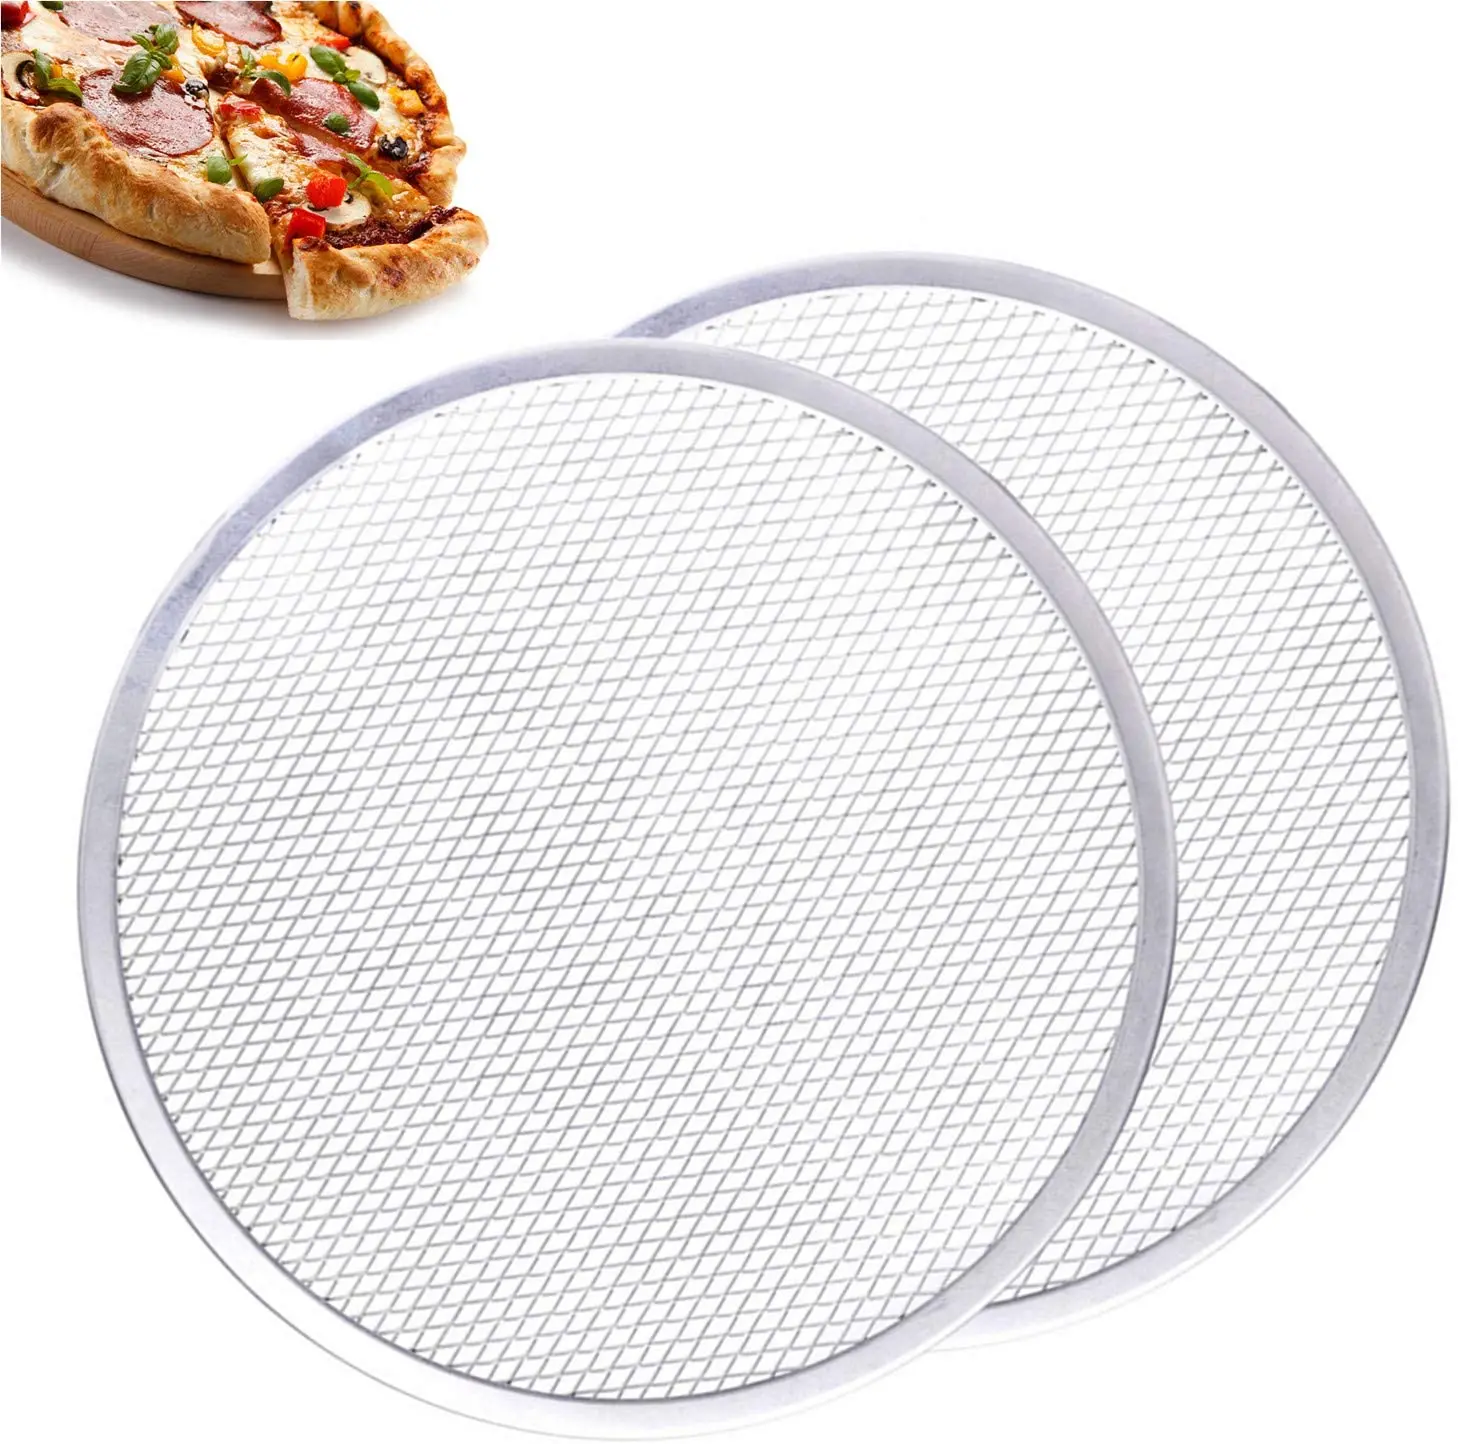 форма для пиццы с дырочками как пользоваться в духовке фото 97